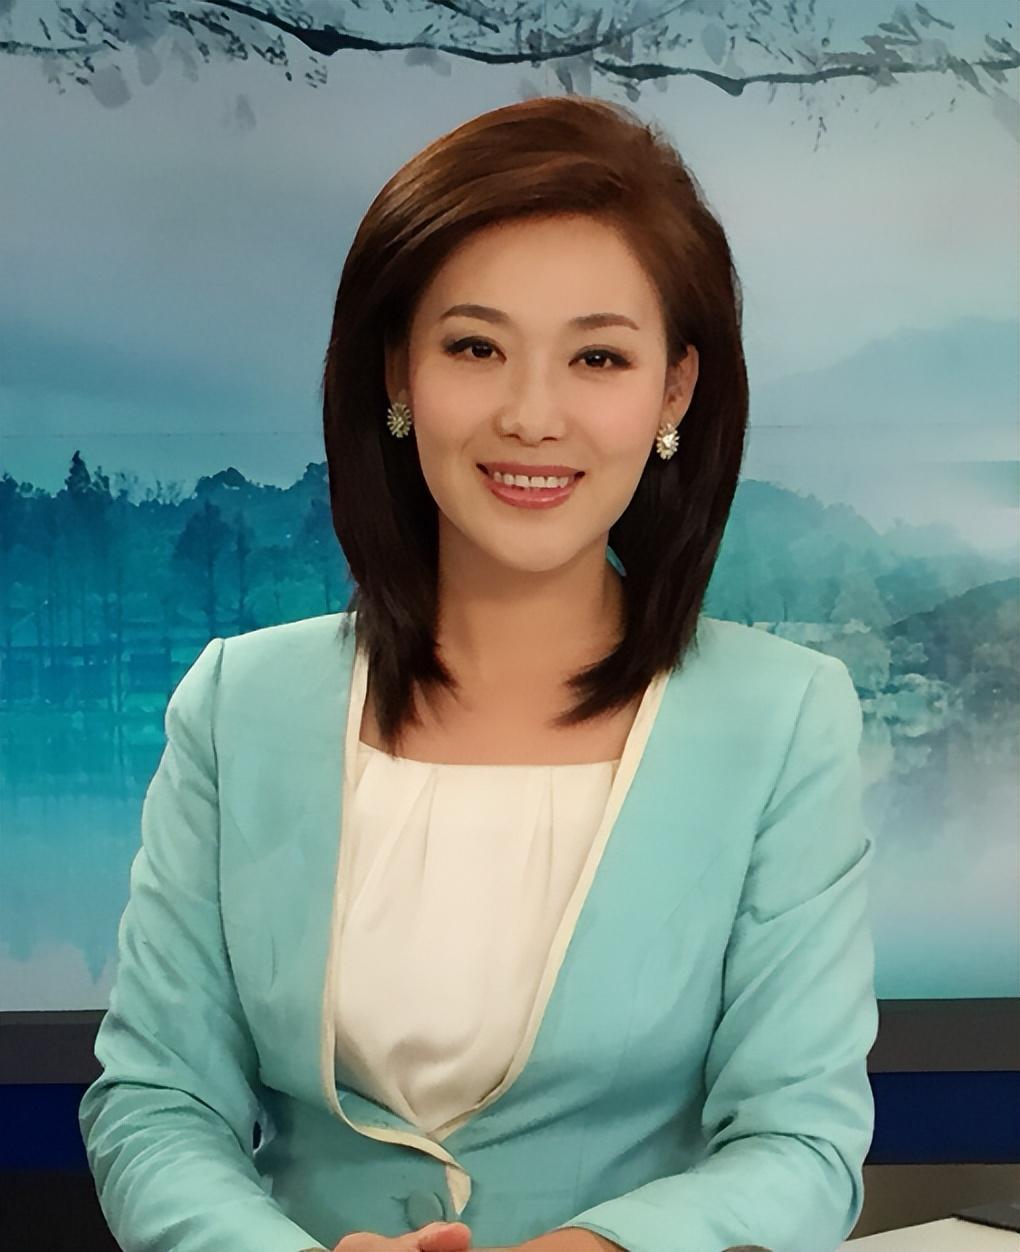 央视主播郑丽:非专业主播的大器晚成 46岁的郑丽是央视的新面孔,她